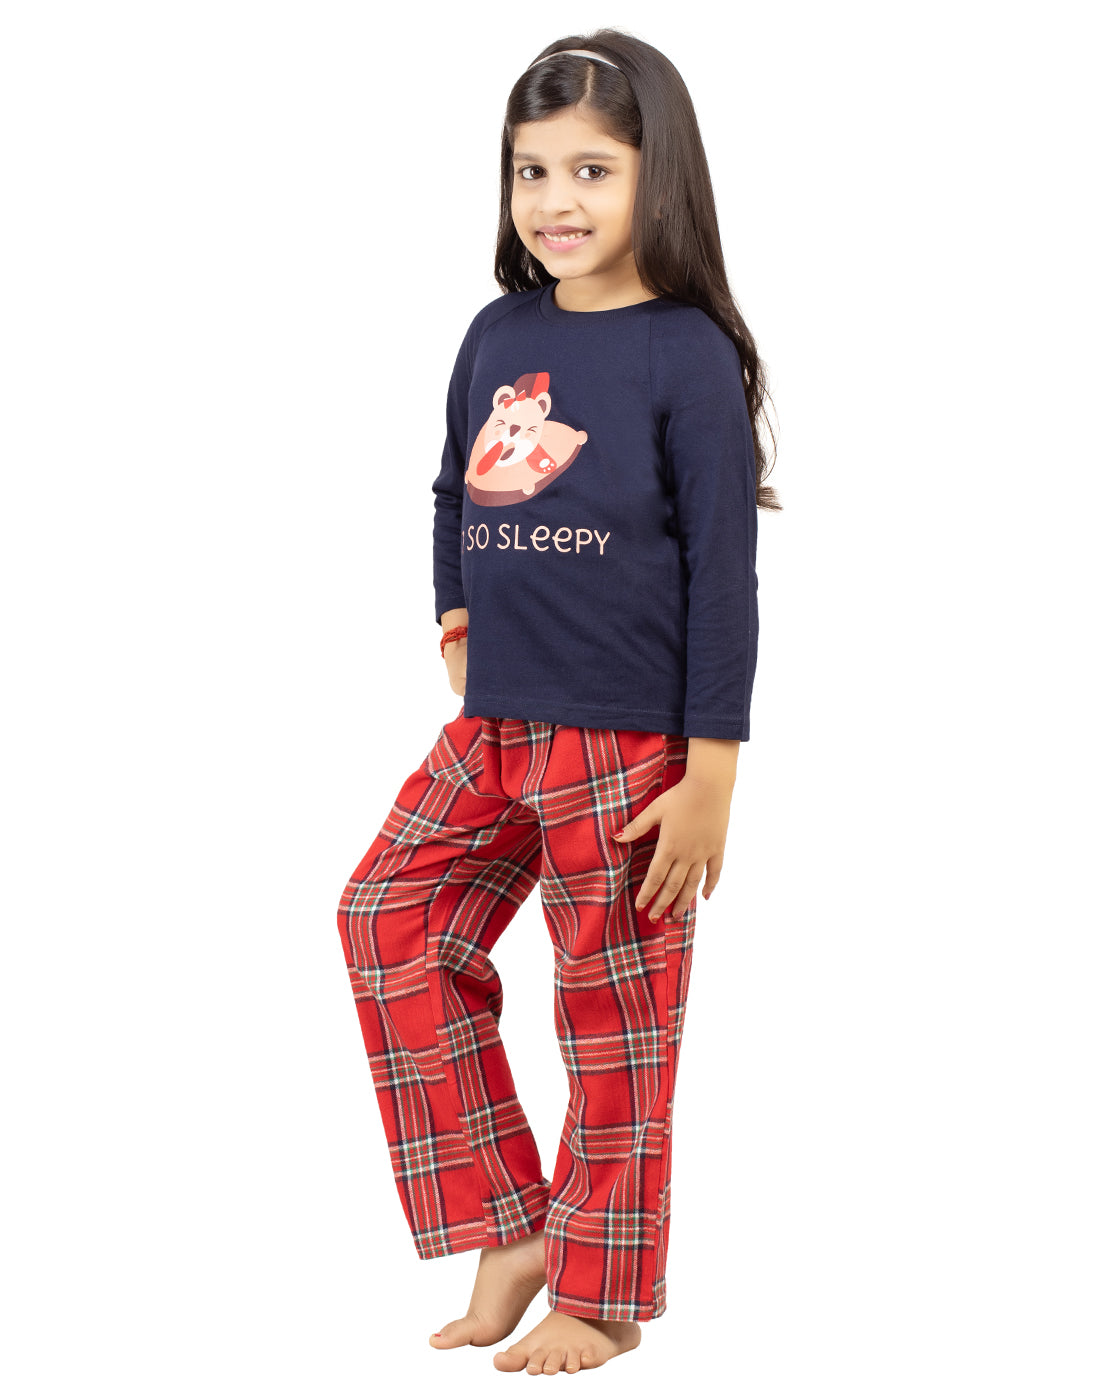 Pyjama Set for Girls-Teddy Print